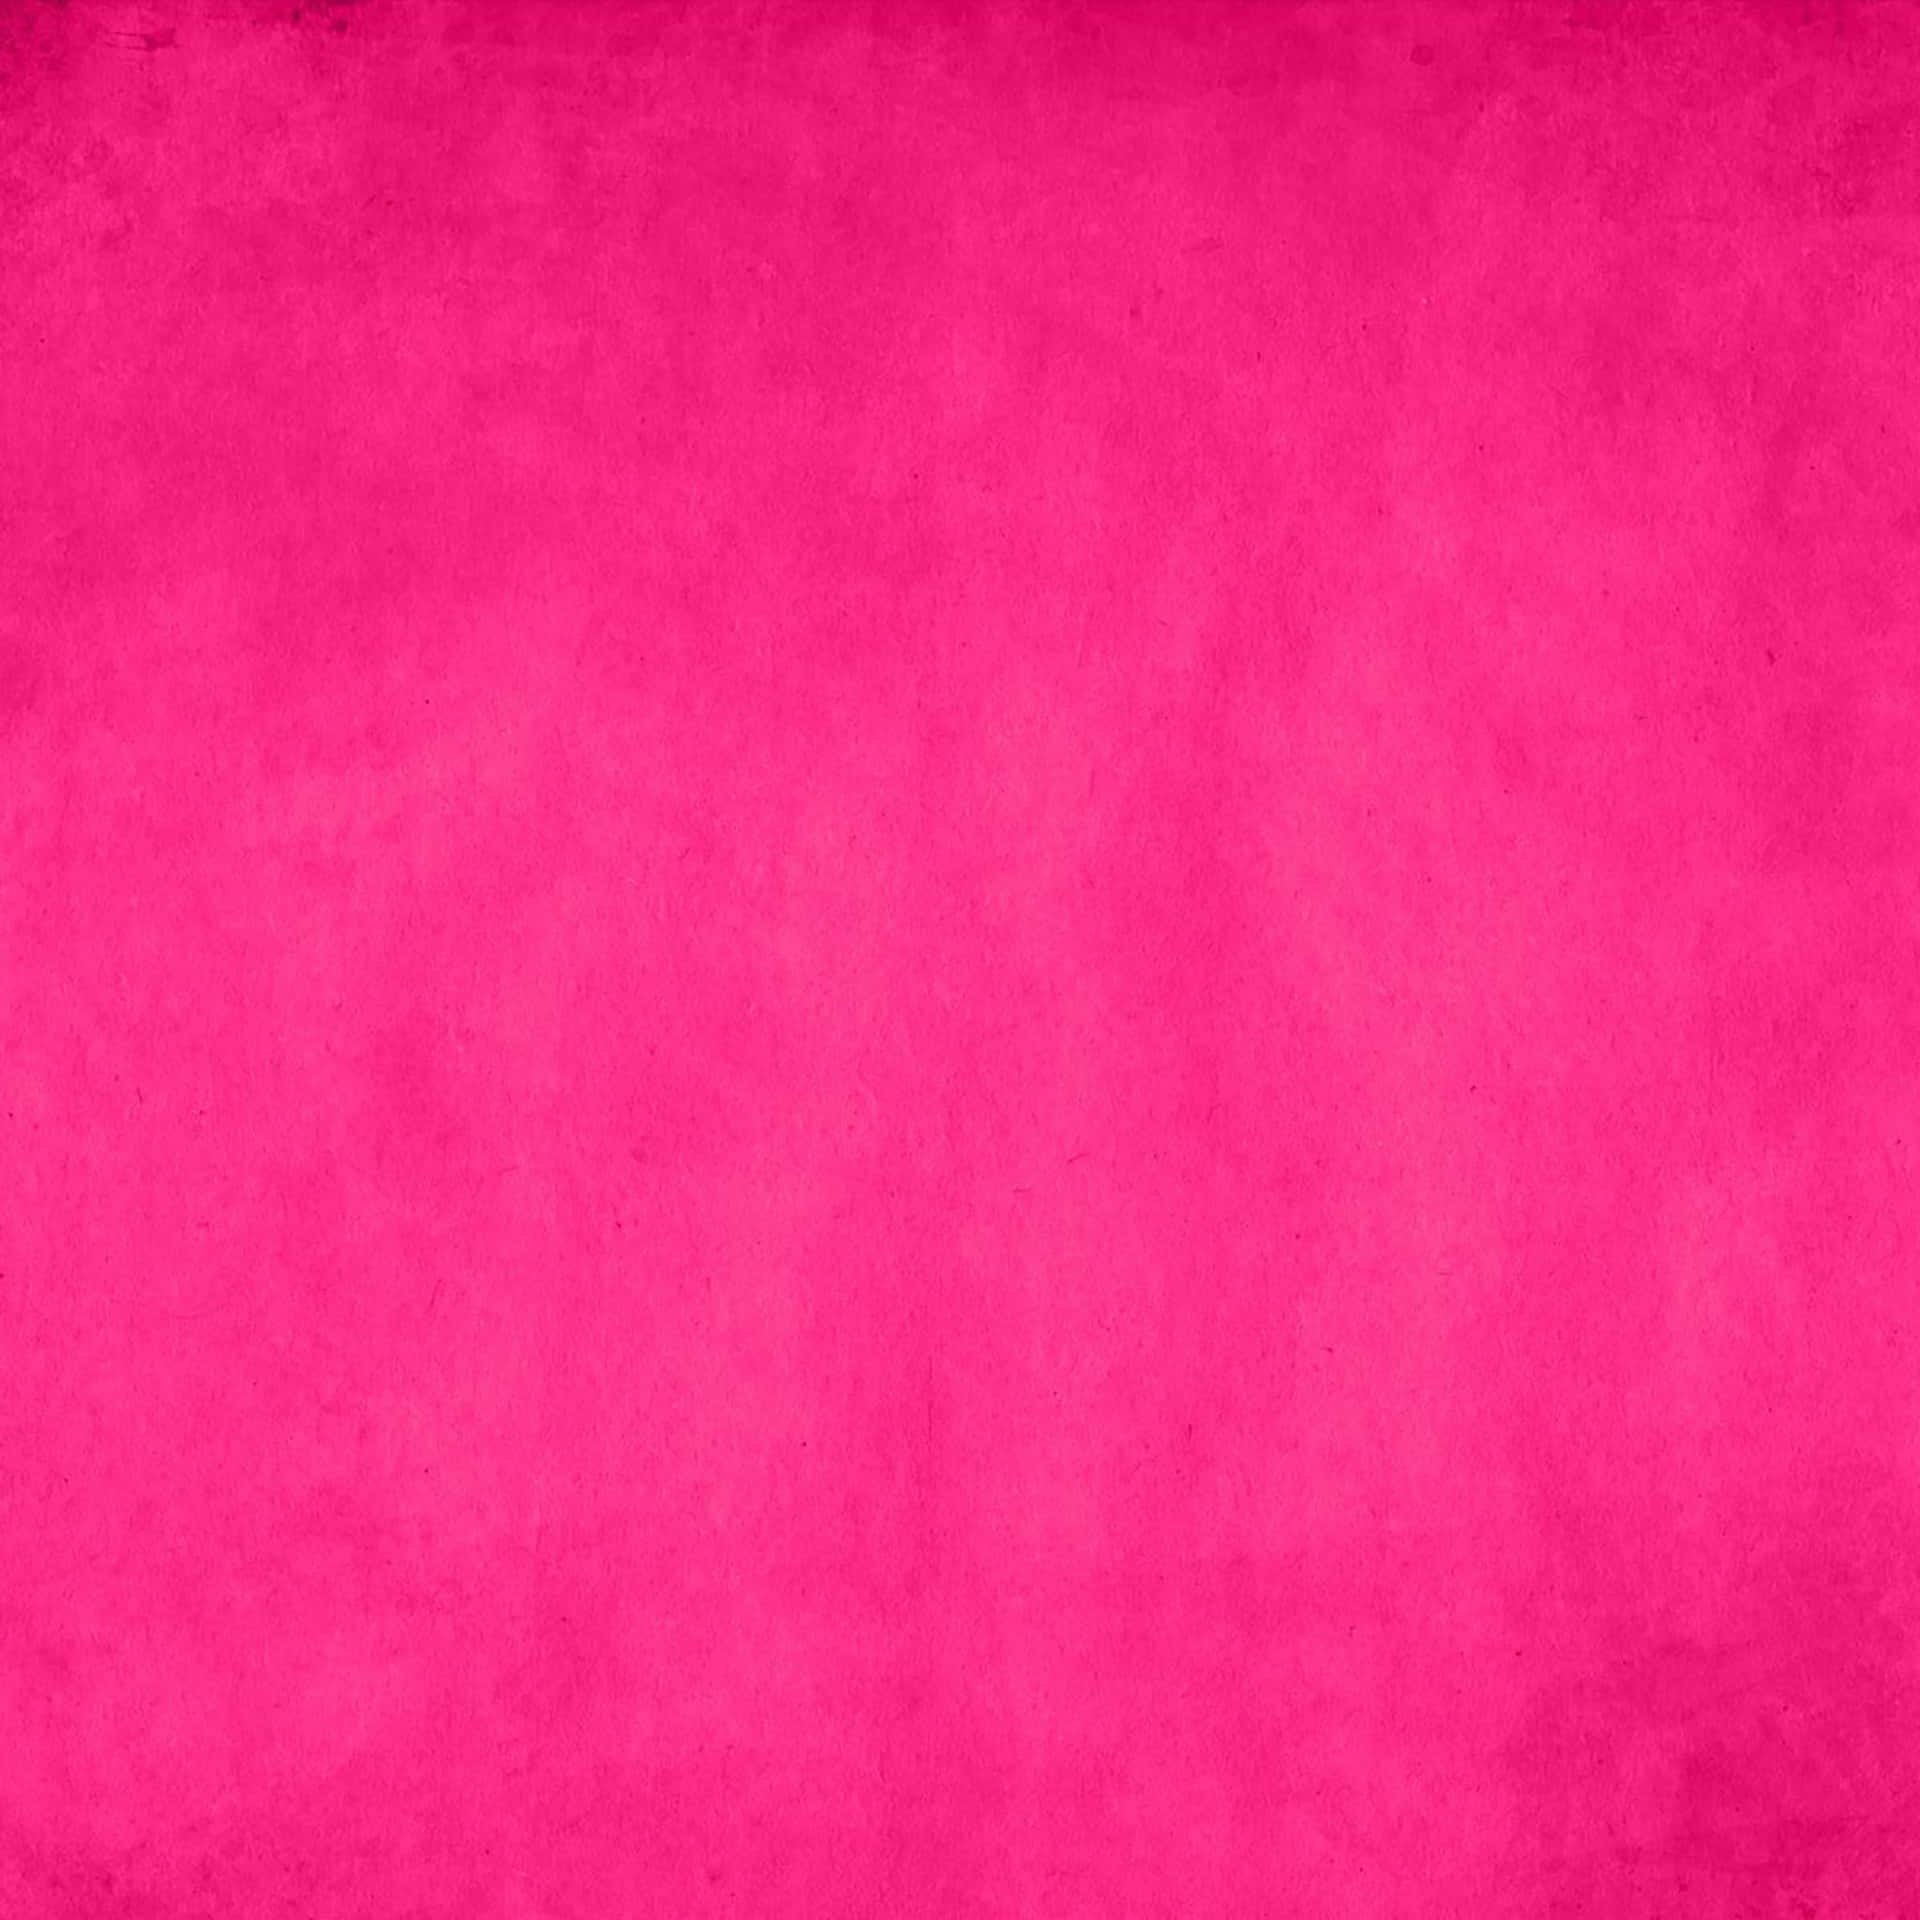 Pinkesgrunge-hintergrundbild Mit Einer Rosafarbenen Farbe Wallpaper